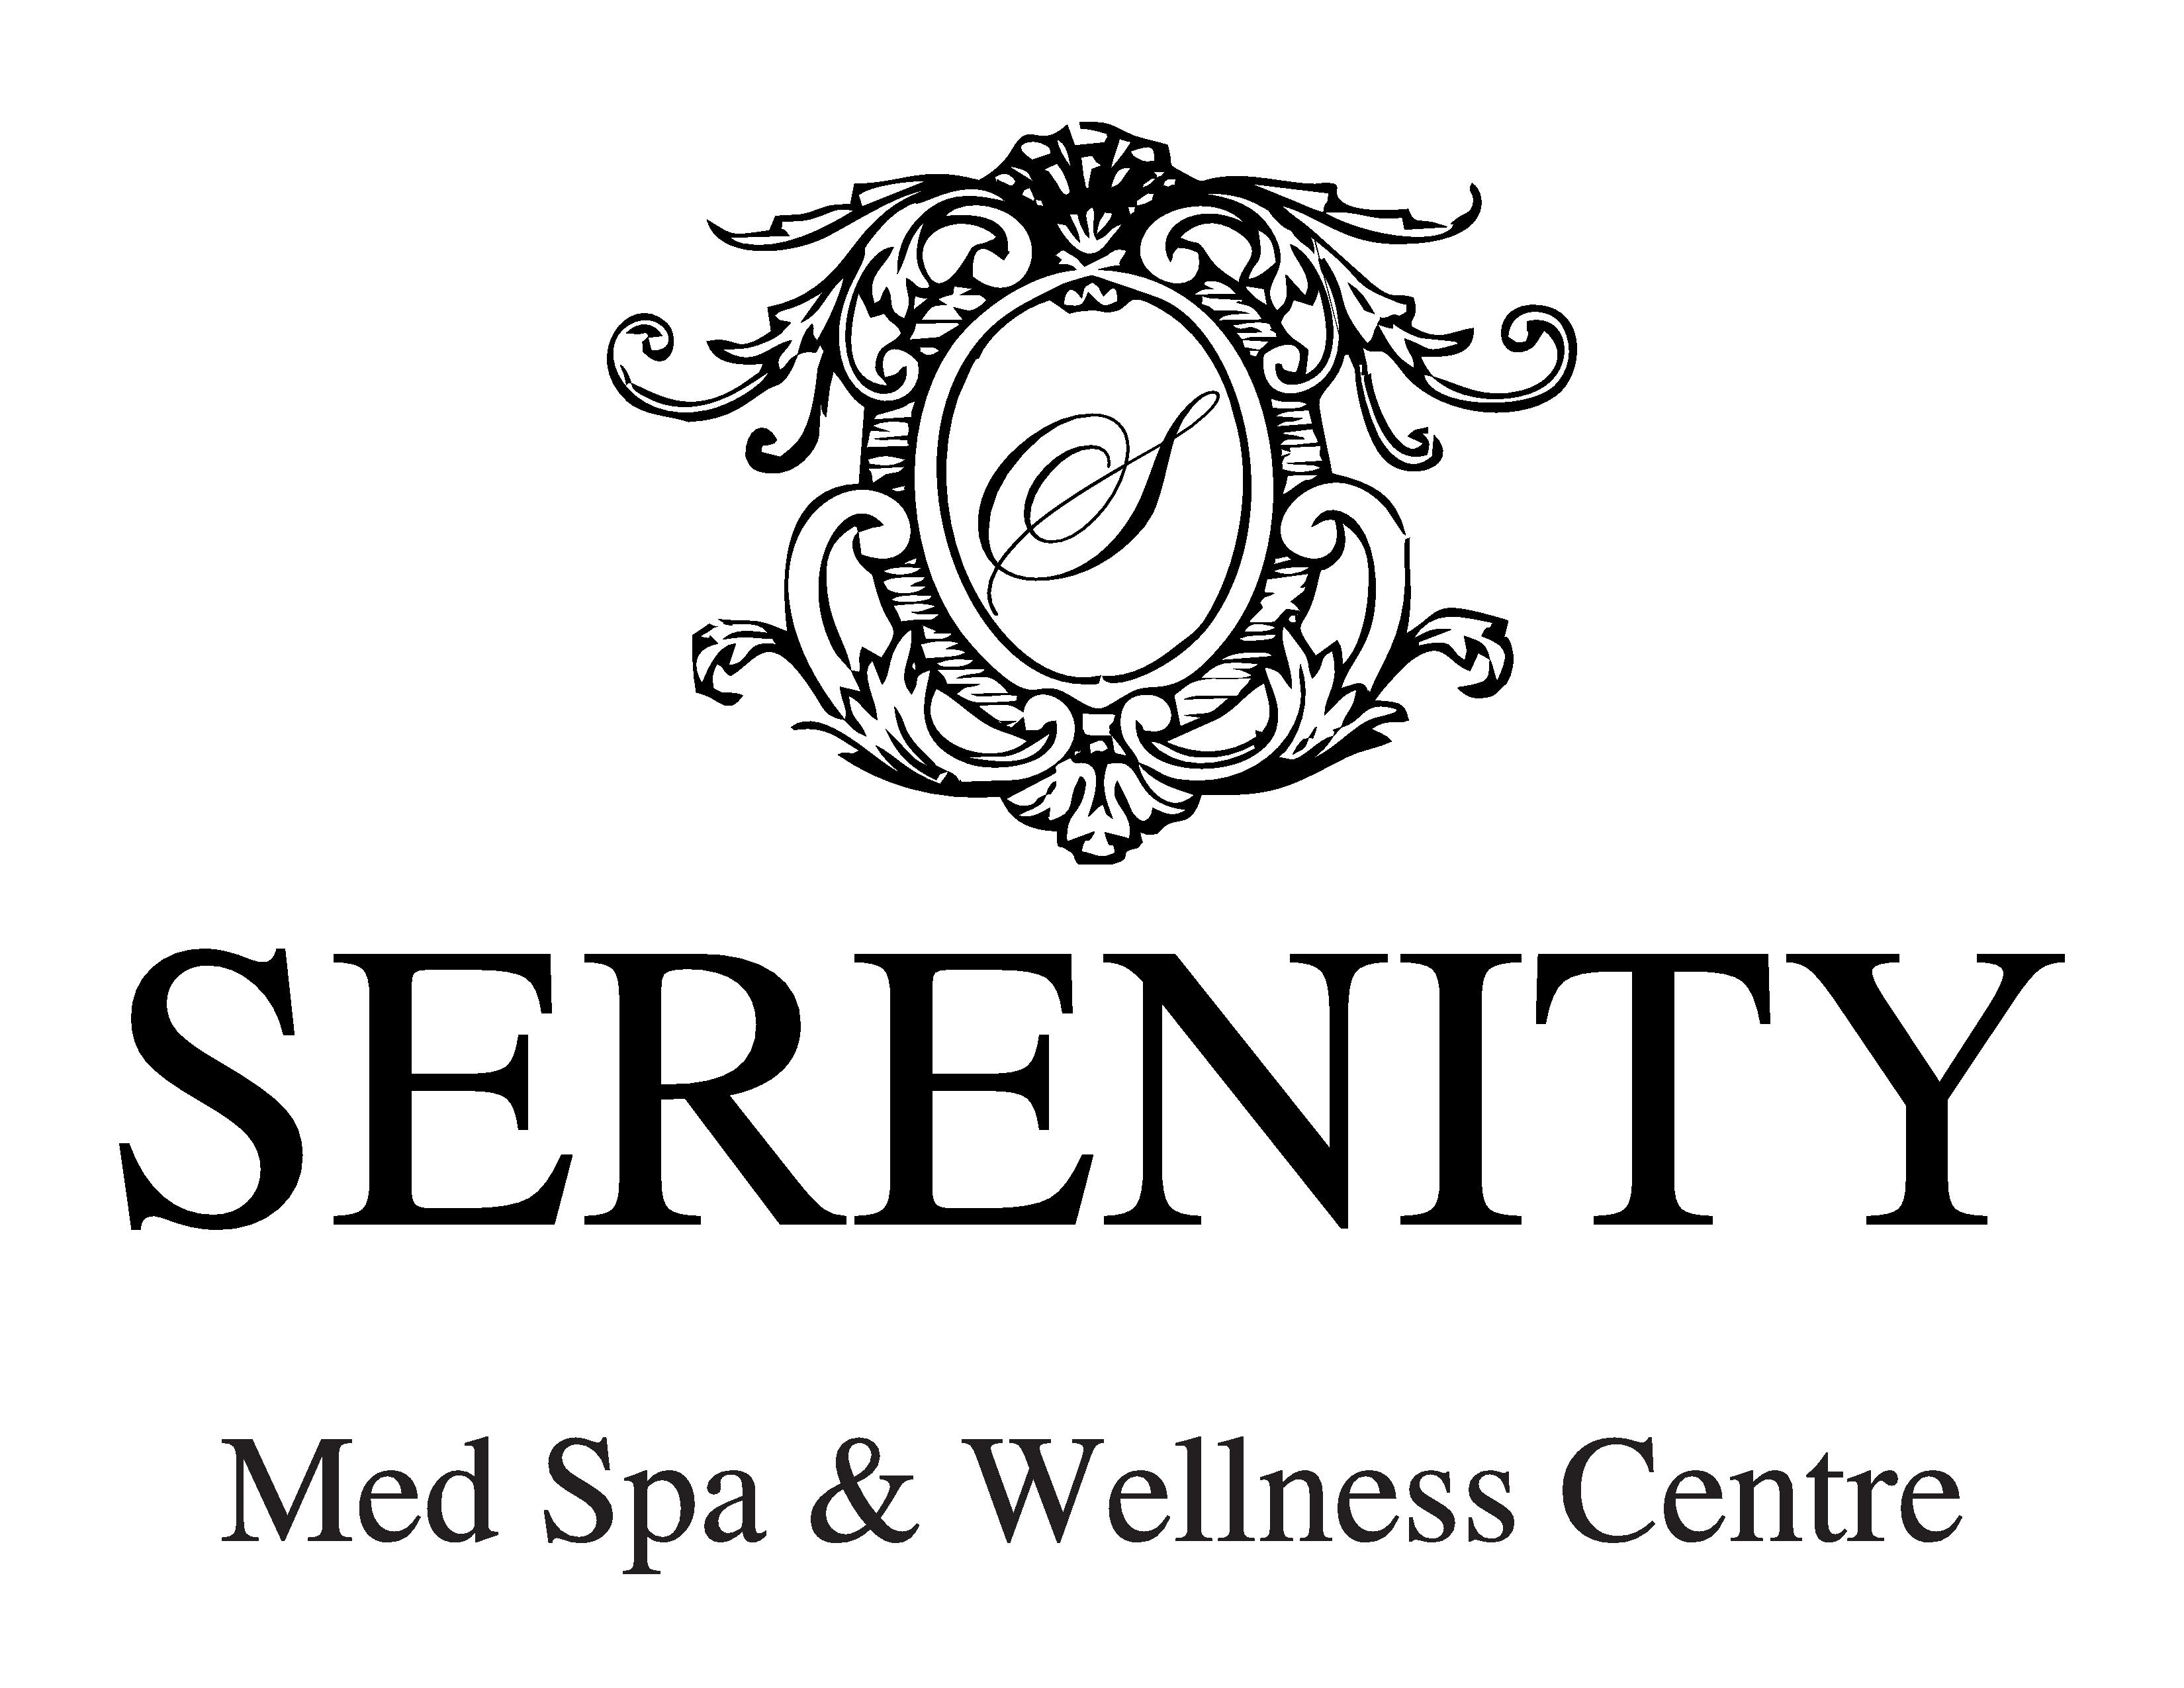 Serenity Med Spa & Wellness Centre